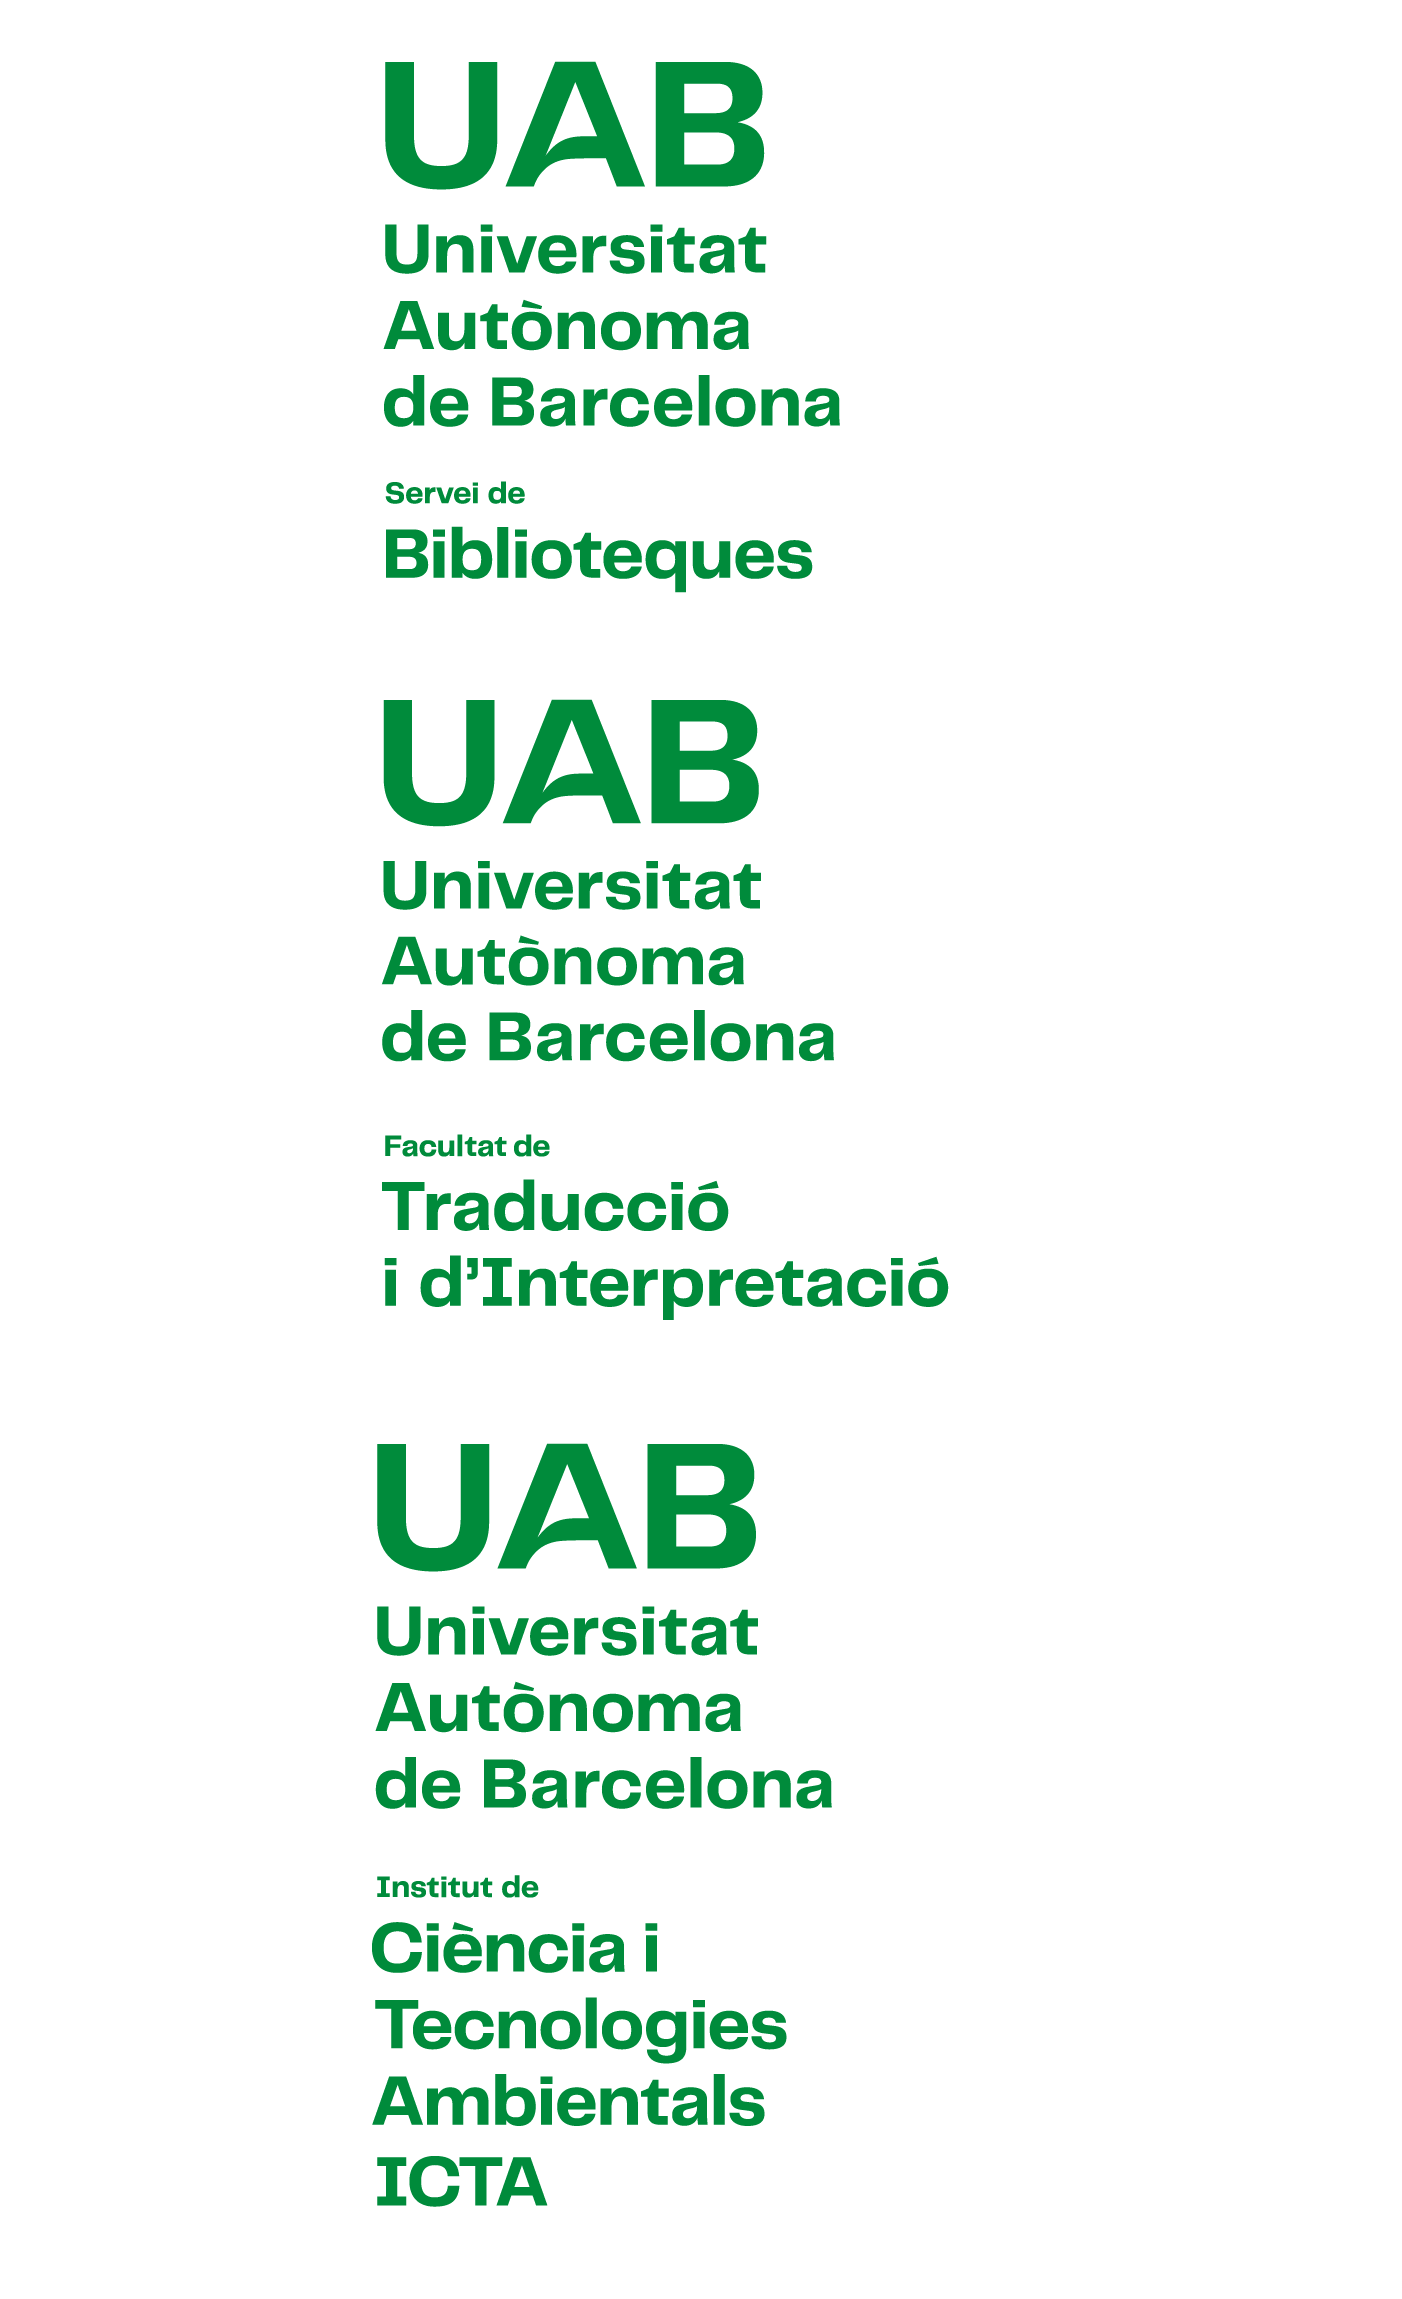 Exemples de construcció de la composició vertical amb versió 5 del logotip UAB